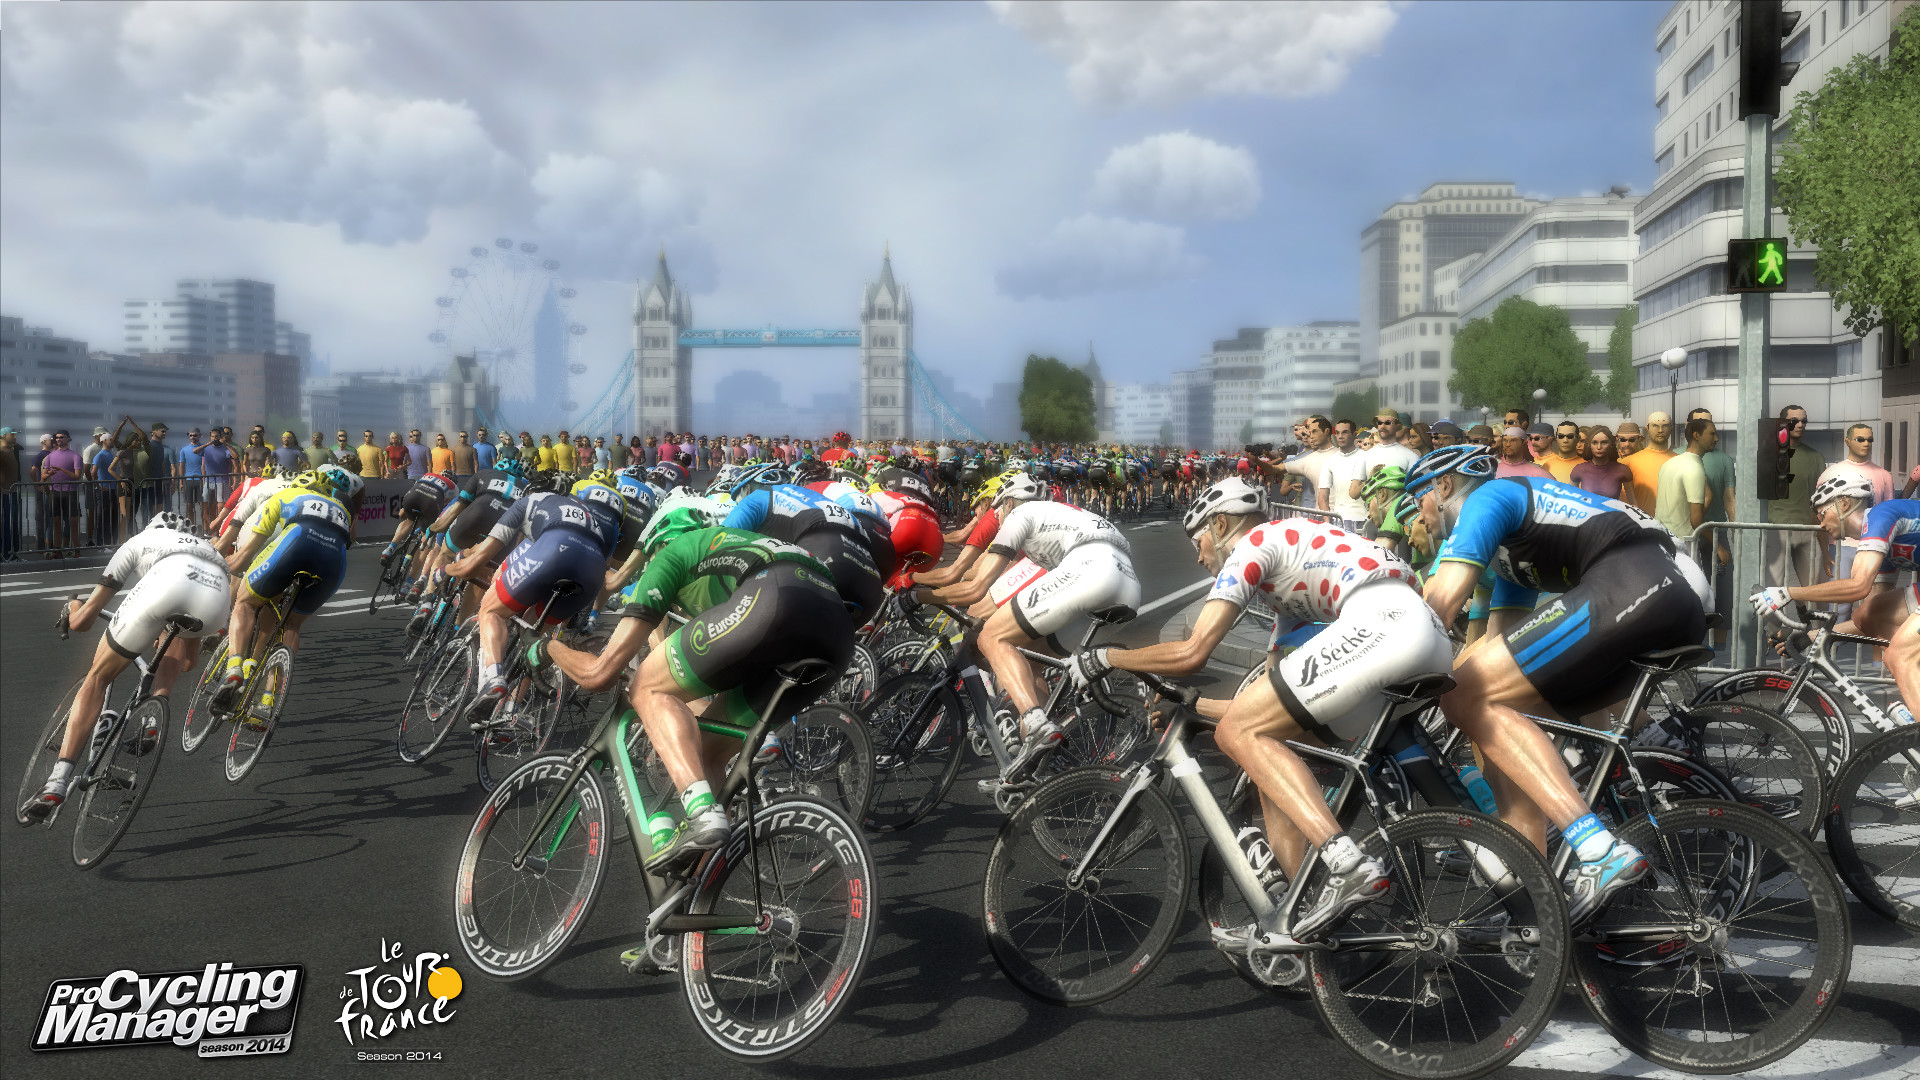 1920x1080 Bilder zu Tour de France 2014 - Bild 1